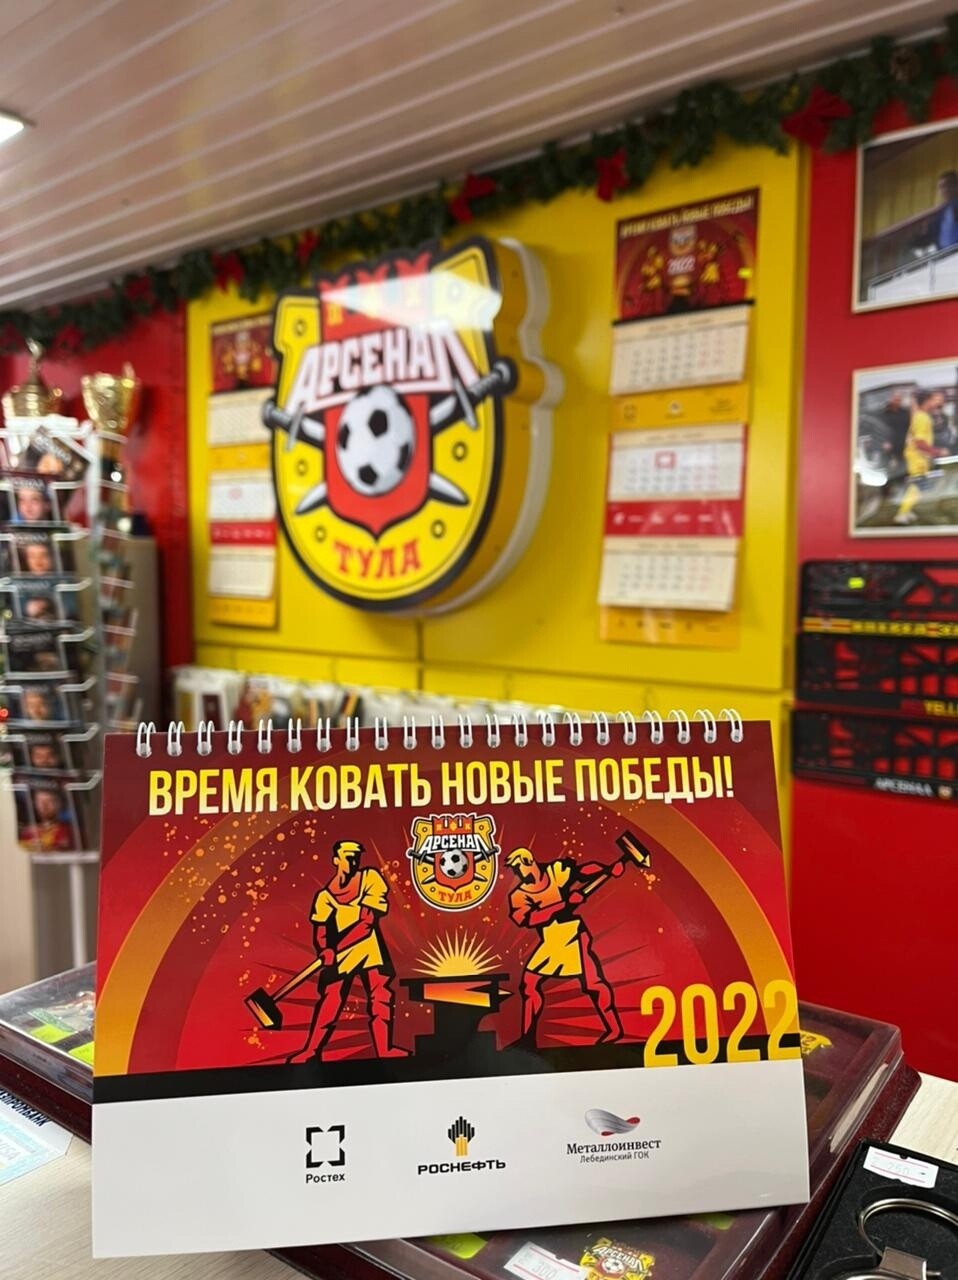 Календарь настольный "ПФК Арсенал" на 2022 год